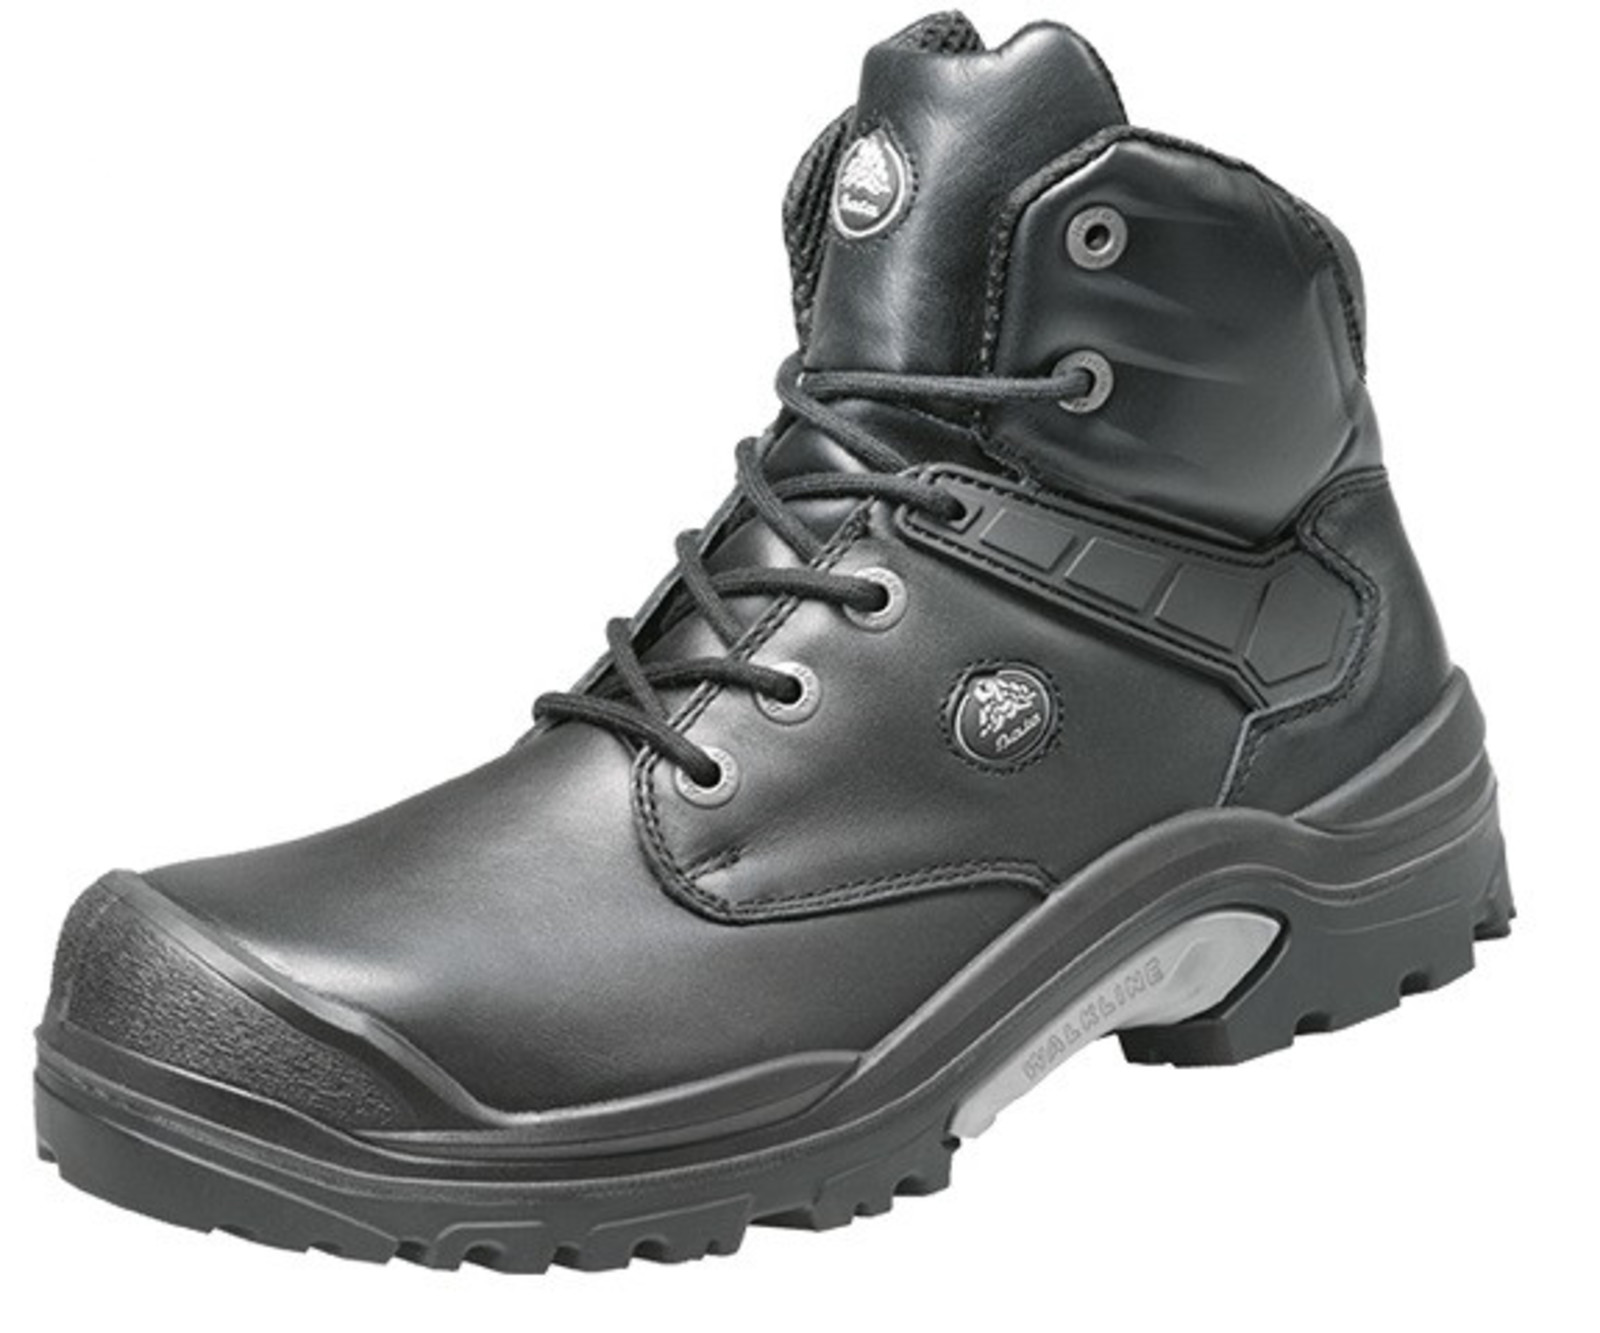 Bezpečnostná obuv Baťa PWR S3 - veľkosť: 48, farba: čierna